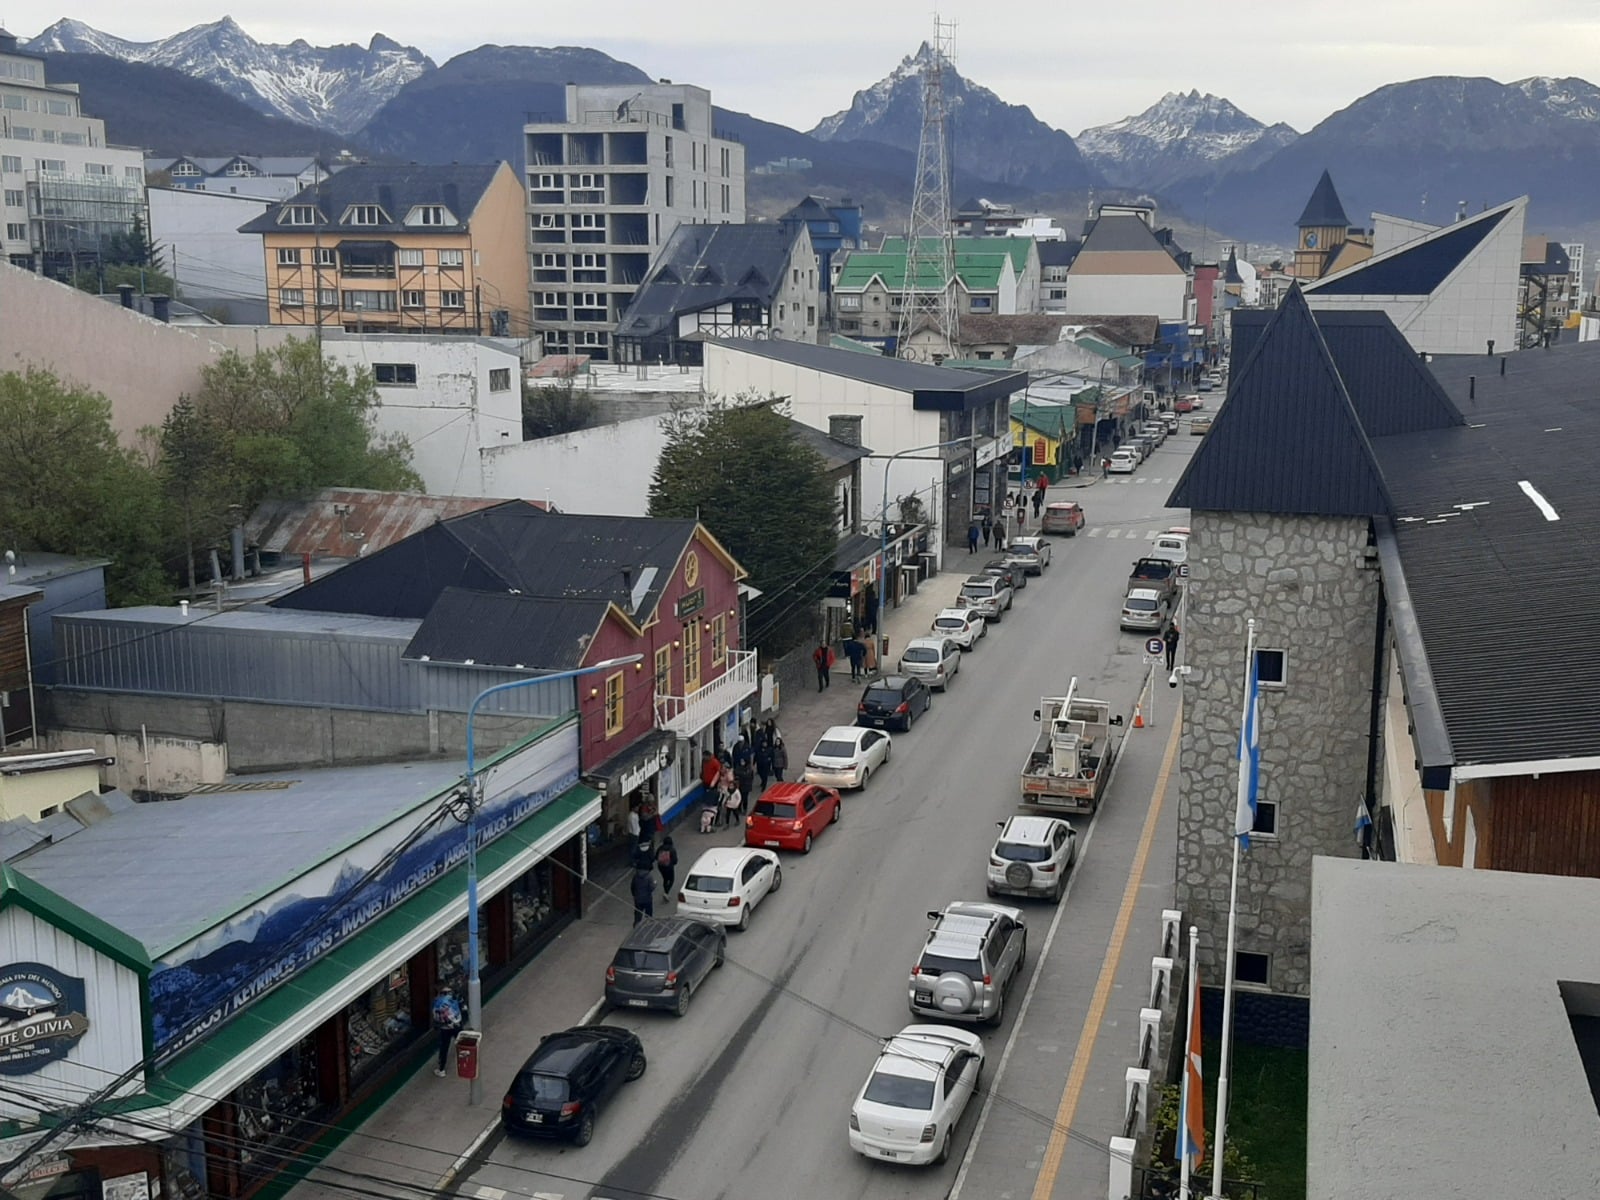 El Boom del alojamiento temporario en Ushuaia